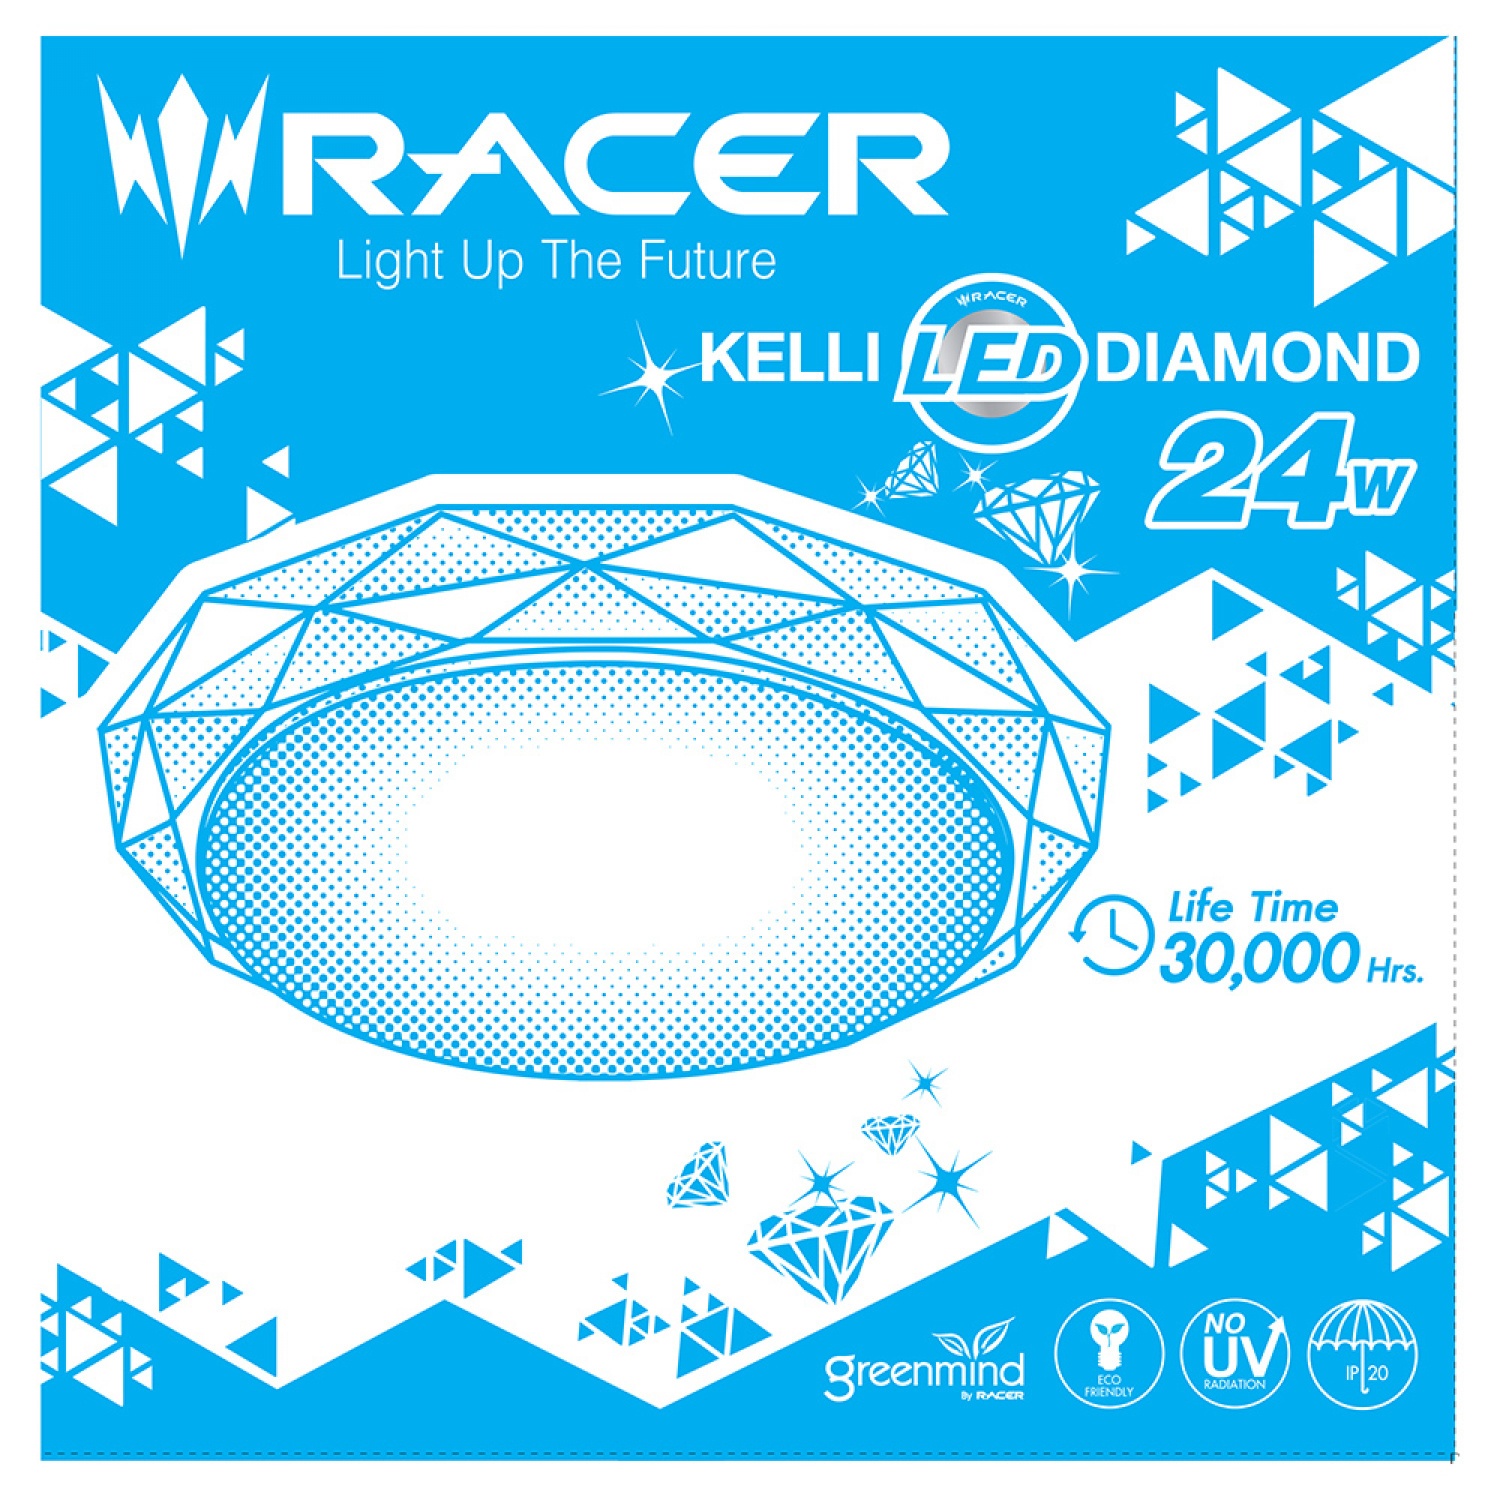 RACER โคมเพดานแอลอีดี 24W รุ่น Diamond4 แสงขาว